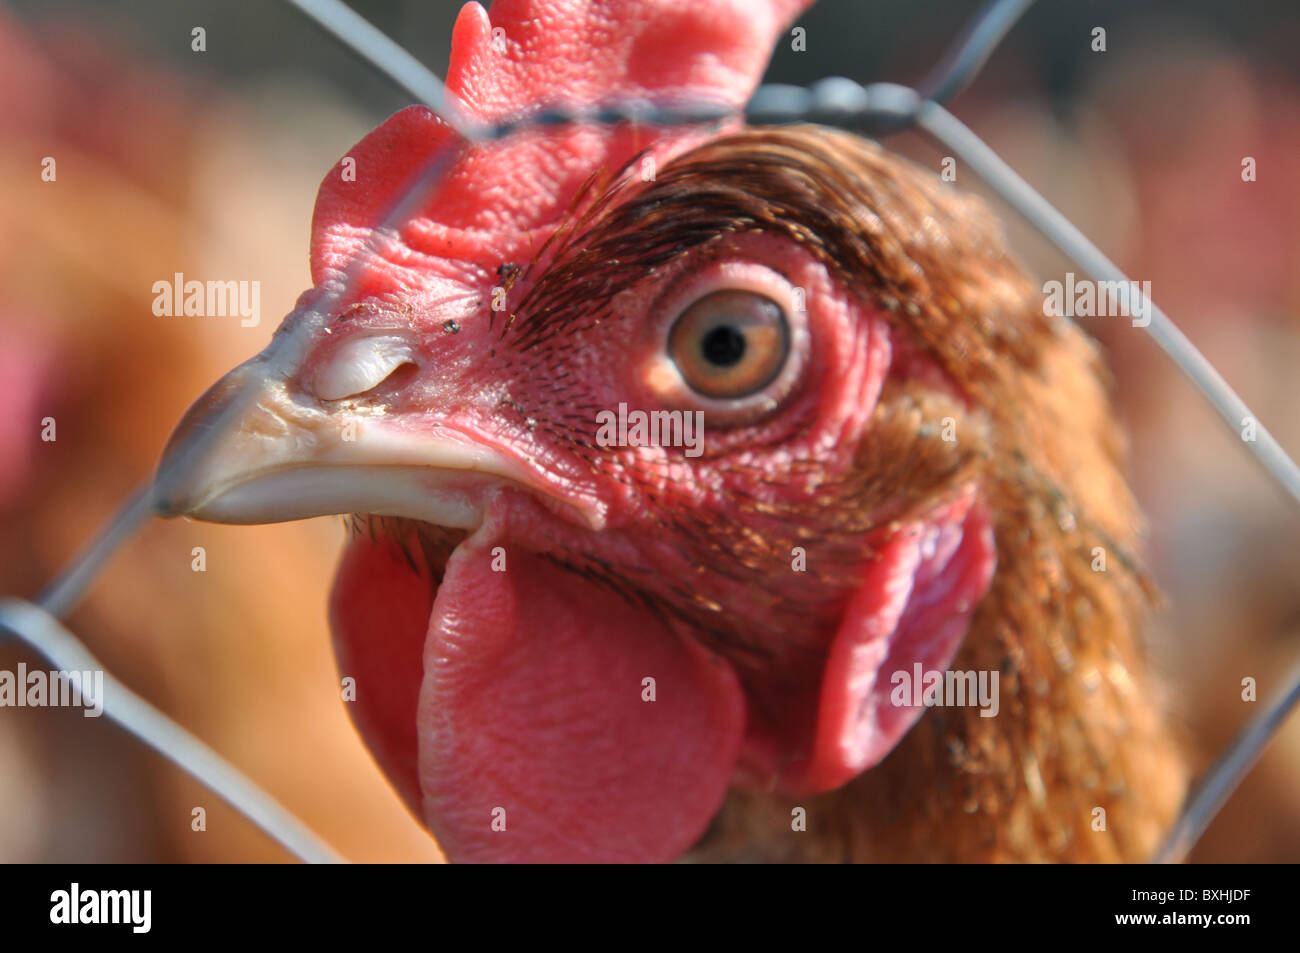 L'élevage du poulet intensif. Gros plan sur une tête de poulet Banque D'Images